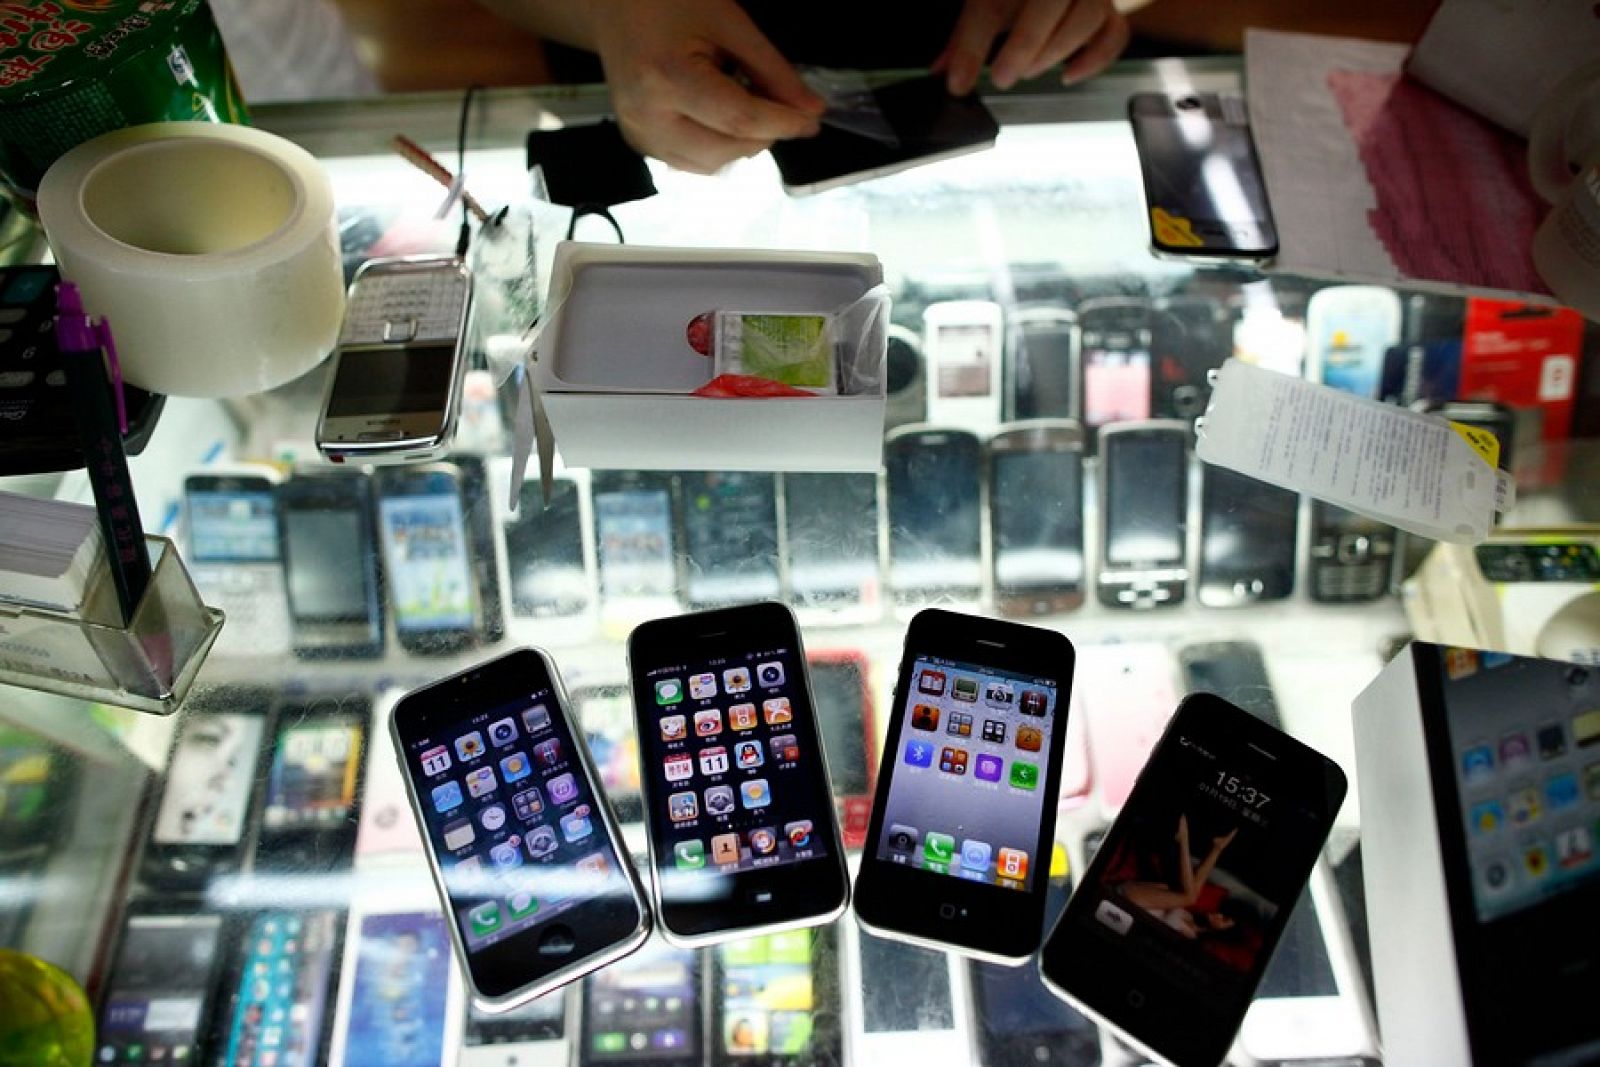 El iPhone 5, que todavía no ha salido al mercado, es uno de los productos falsificados de Apple más demandados en China